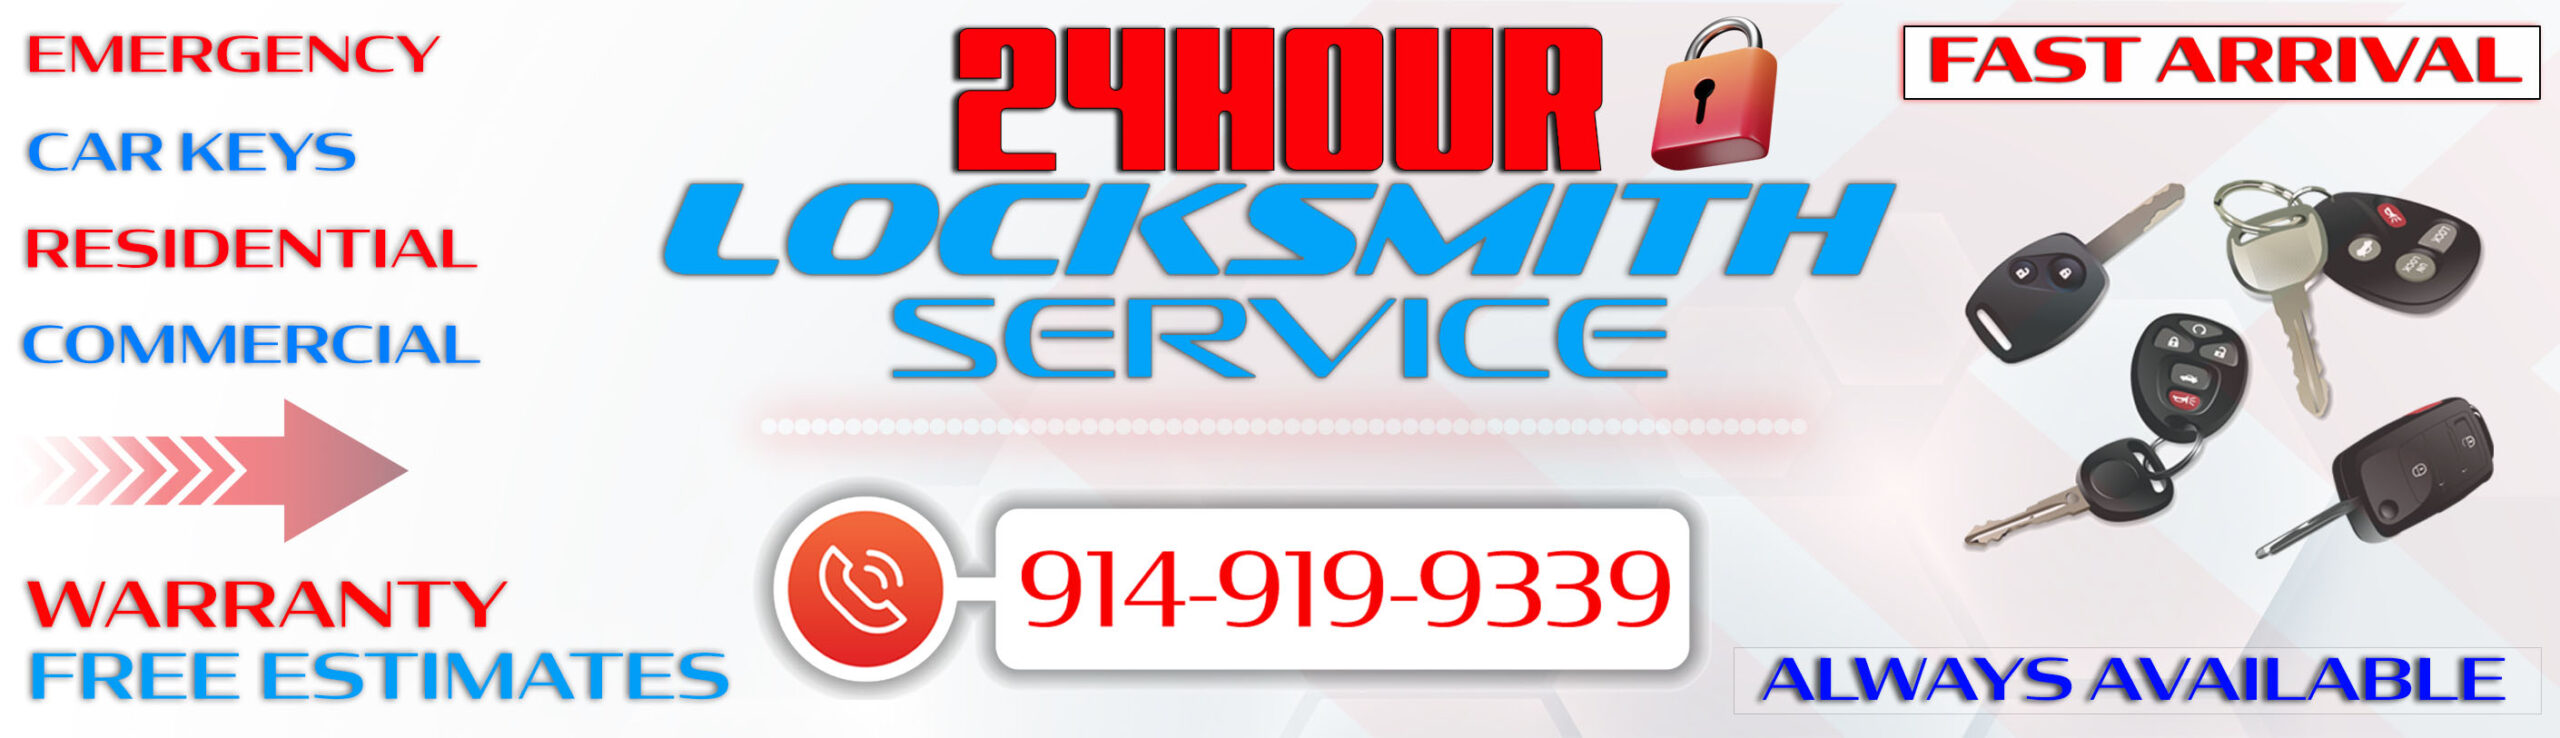 locksmith service website banner